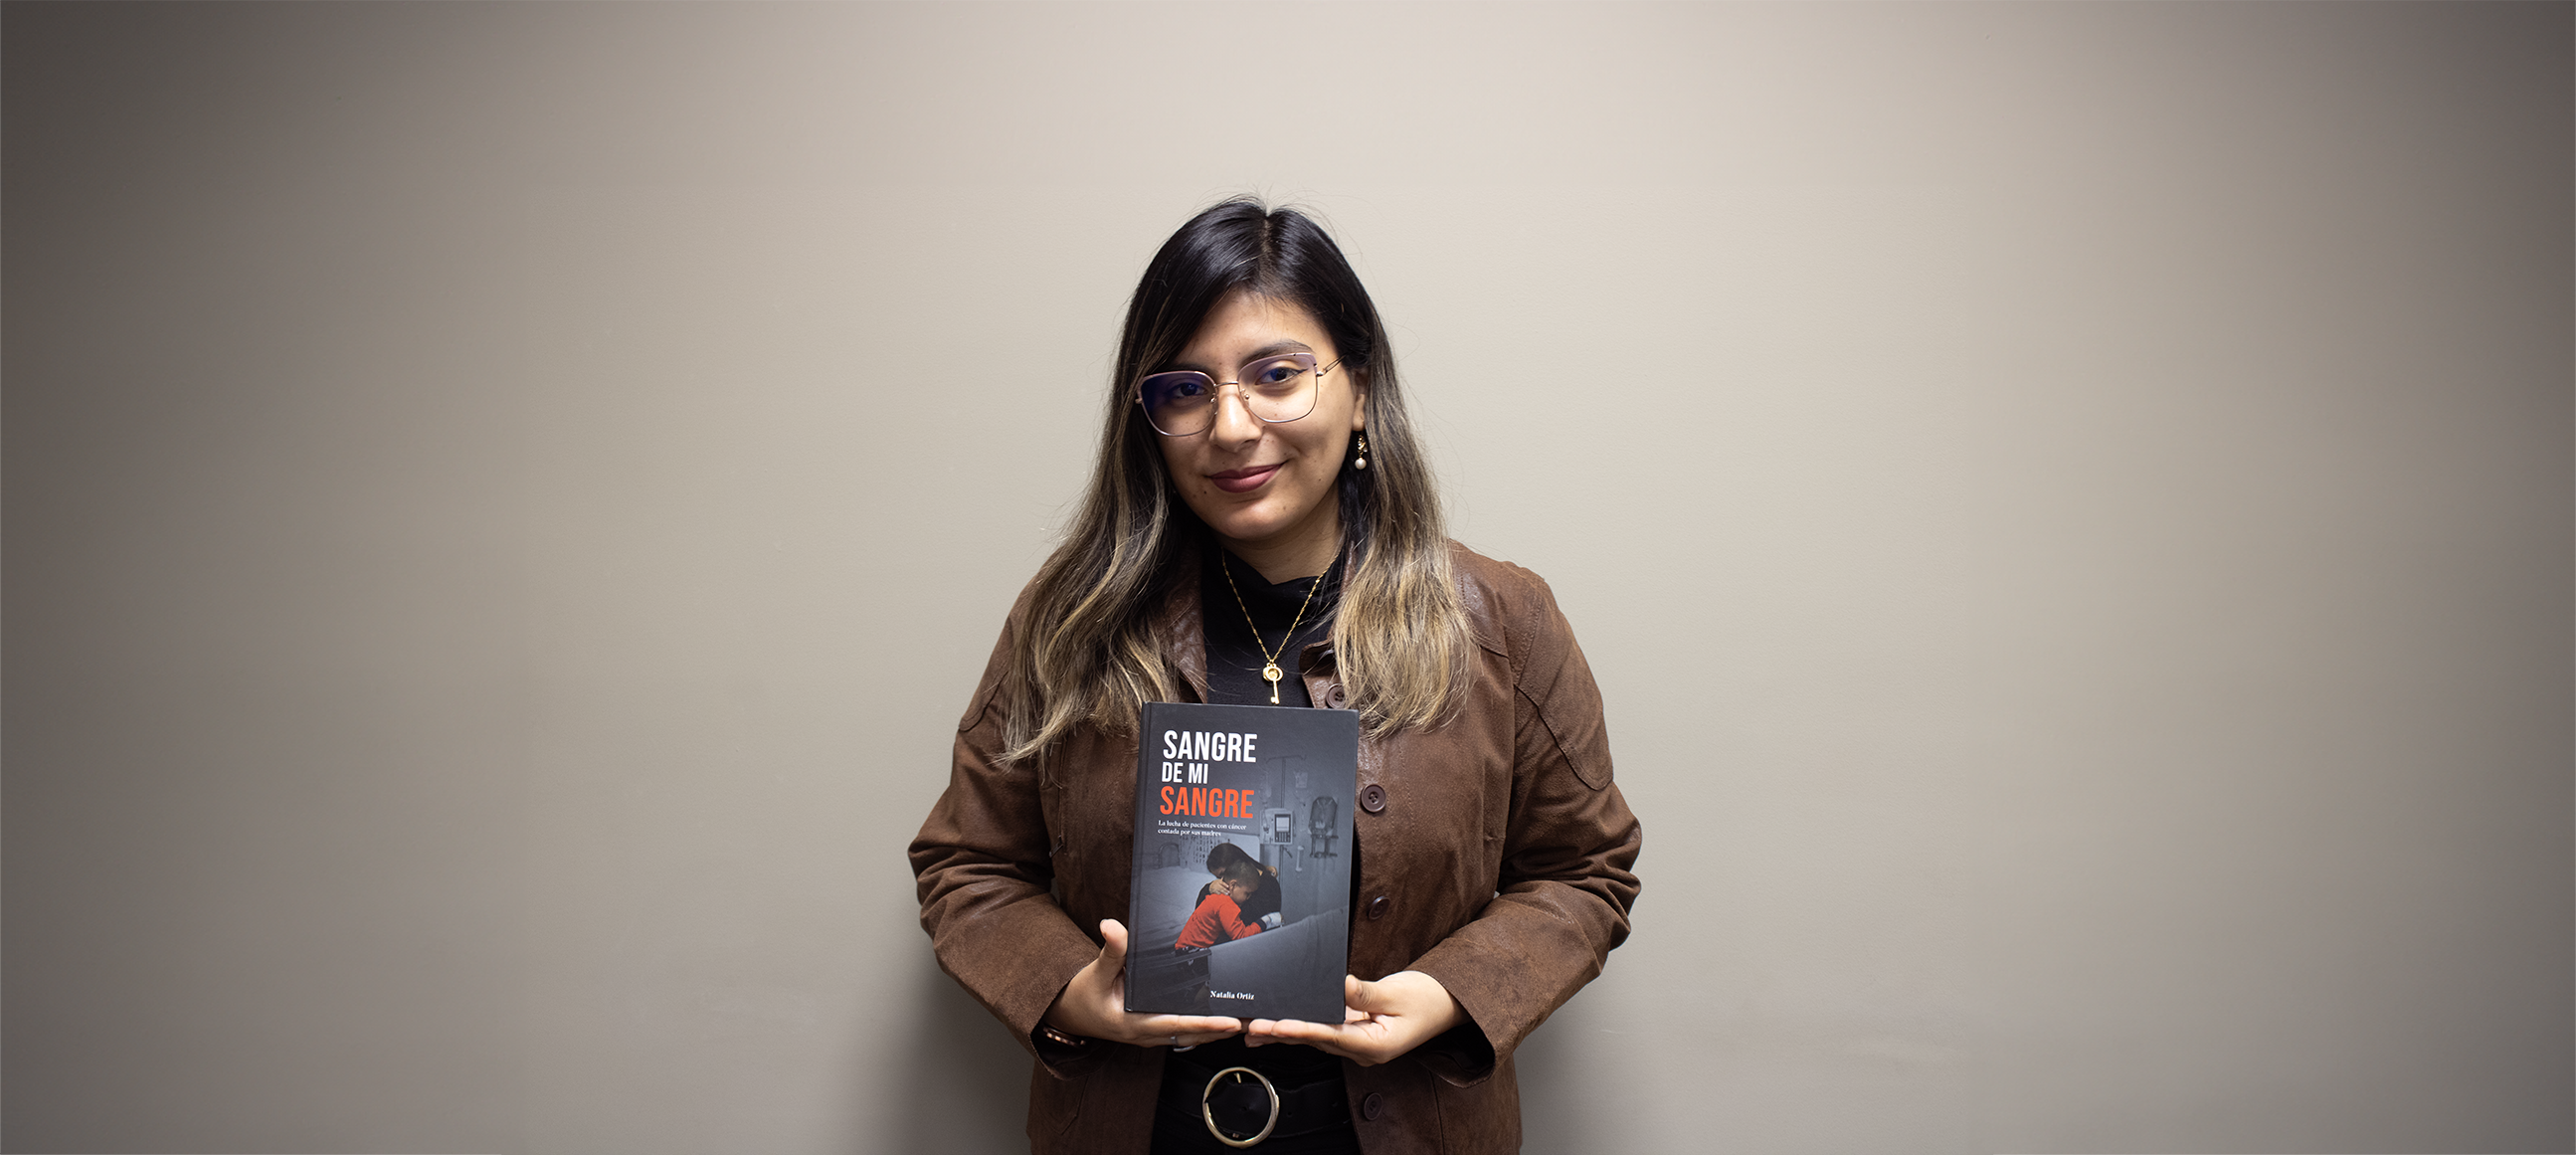 Egresada de la Carrera de Comunicación y Periodismo de la UPC presenta su primer libro &#8220;Sangre de mi Sangre&#8221;: testimonios de lucha y esperanza contra la leucemia Infantil a través de la mirada de una madre